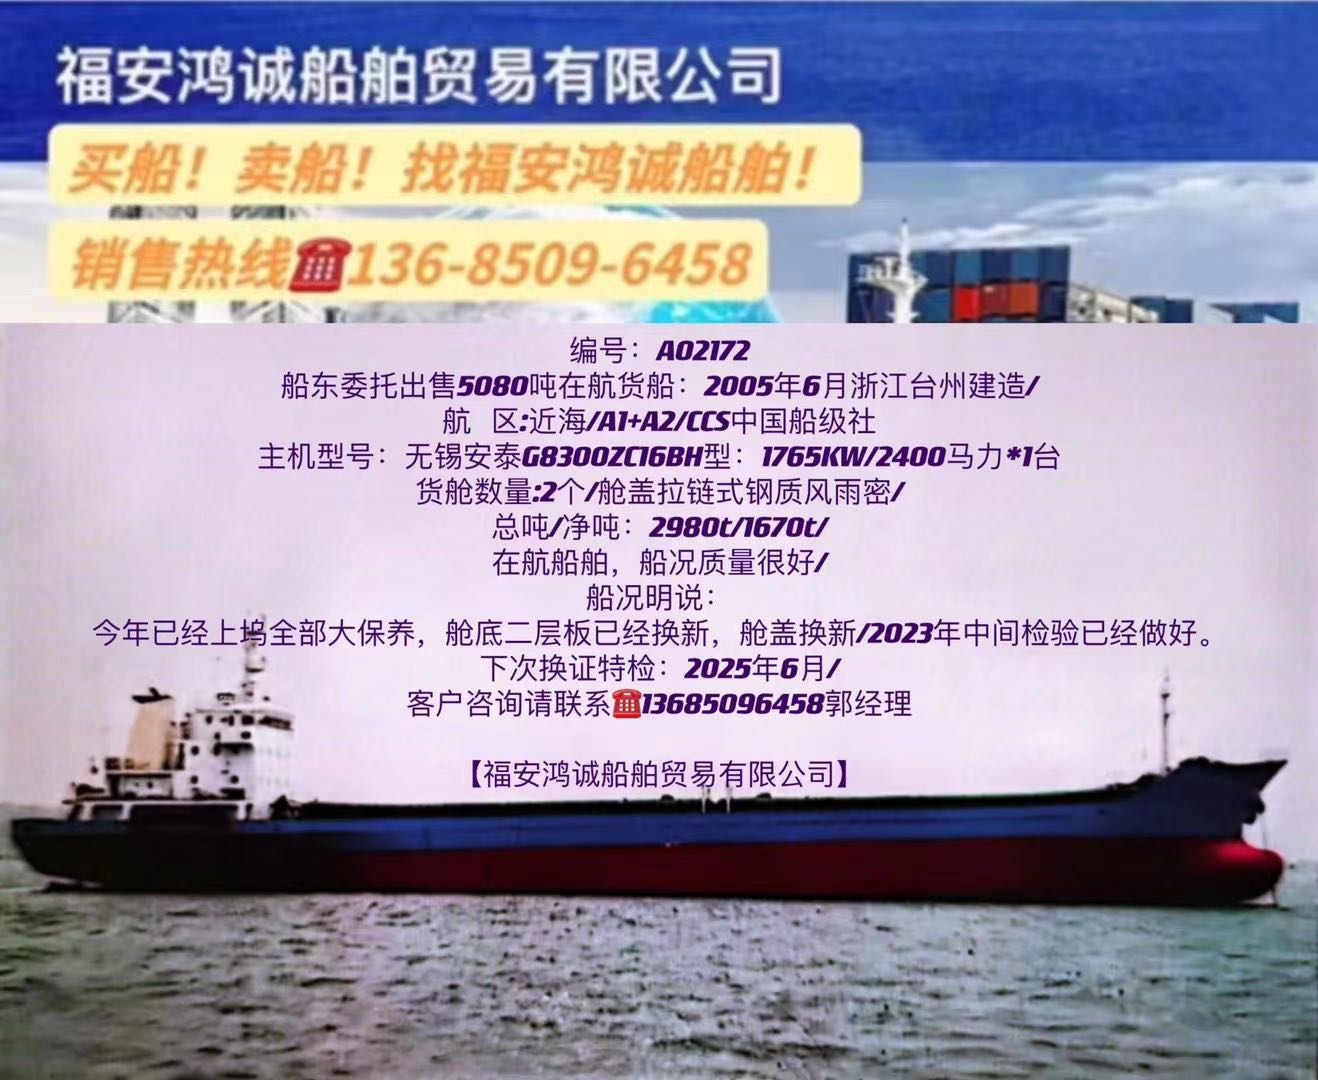 出售05年5080吨在航货船